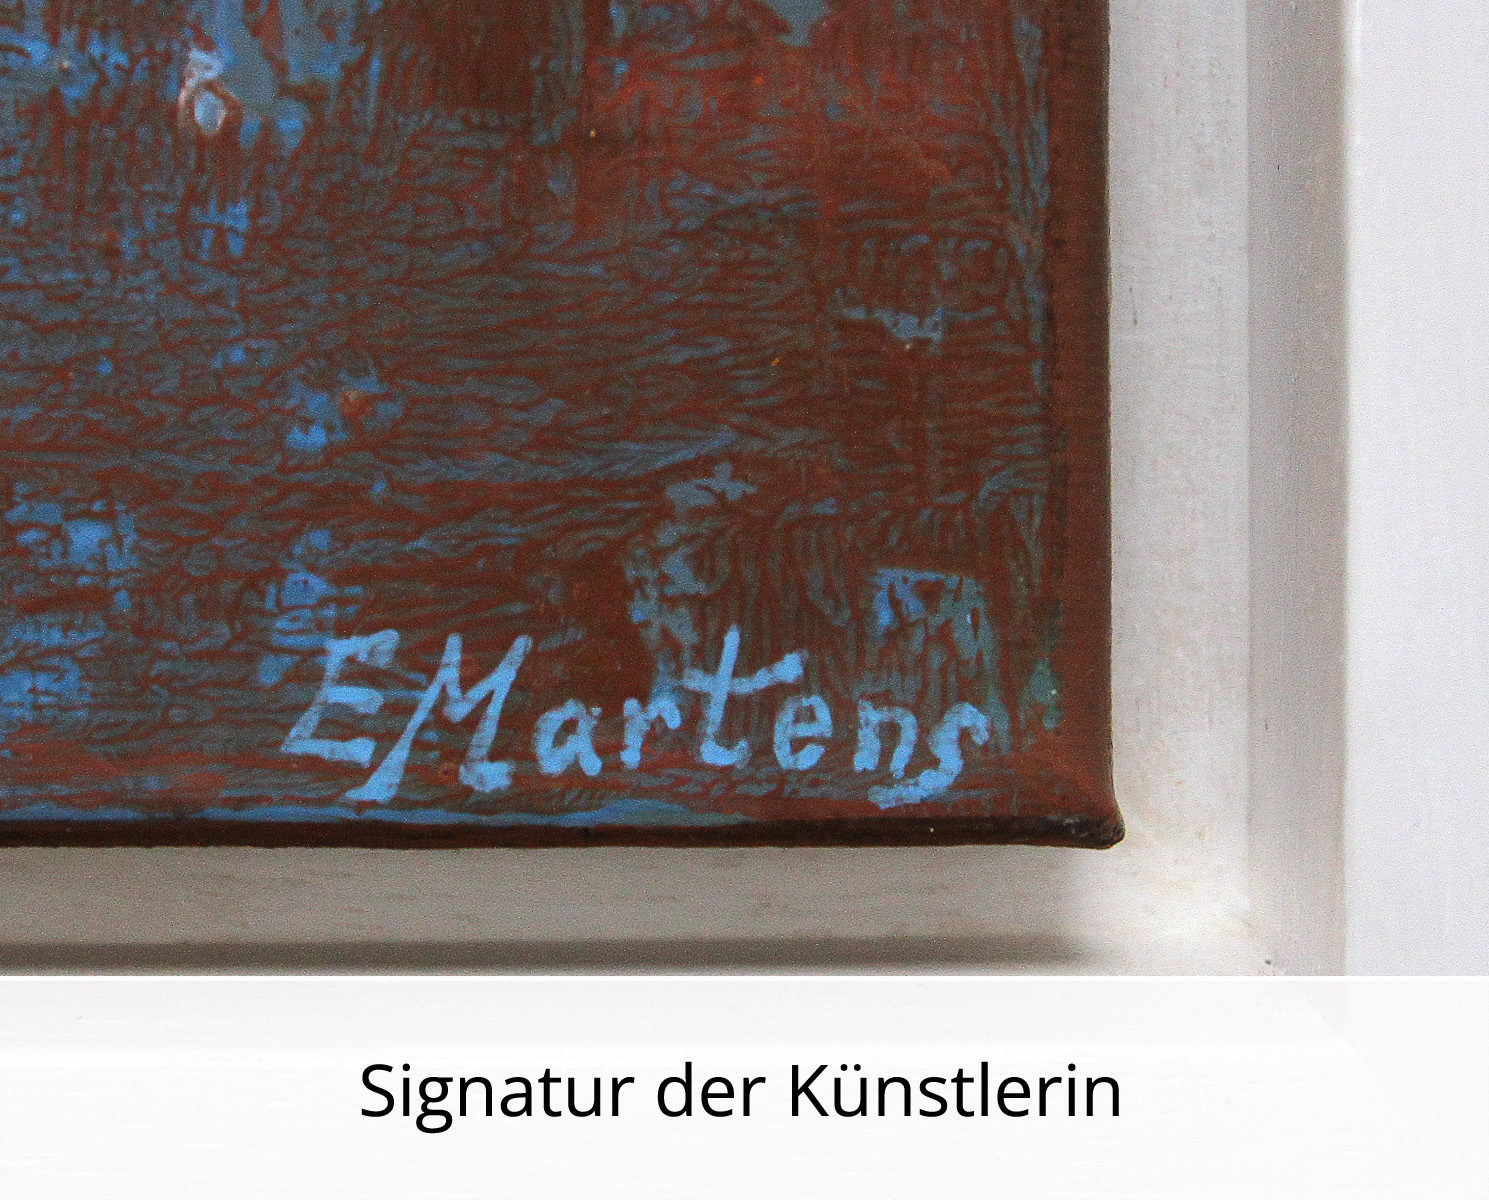 Abstrakte Malerei von Ewa Martens: Sonniger Tag am Strand, Original/Unikat